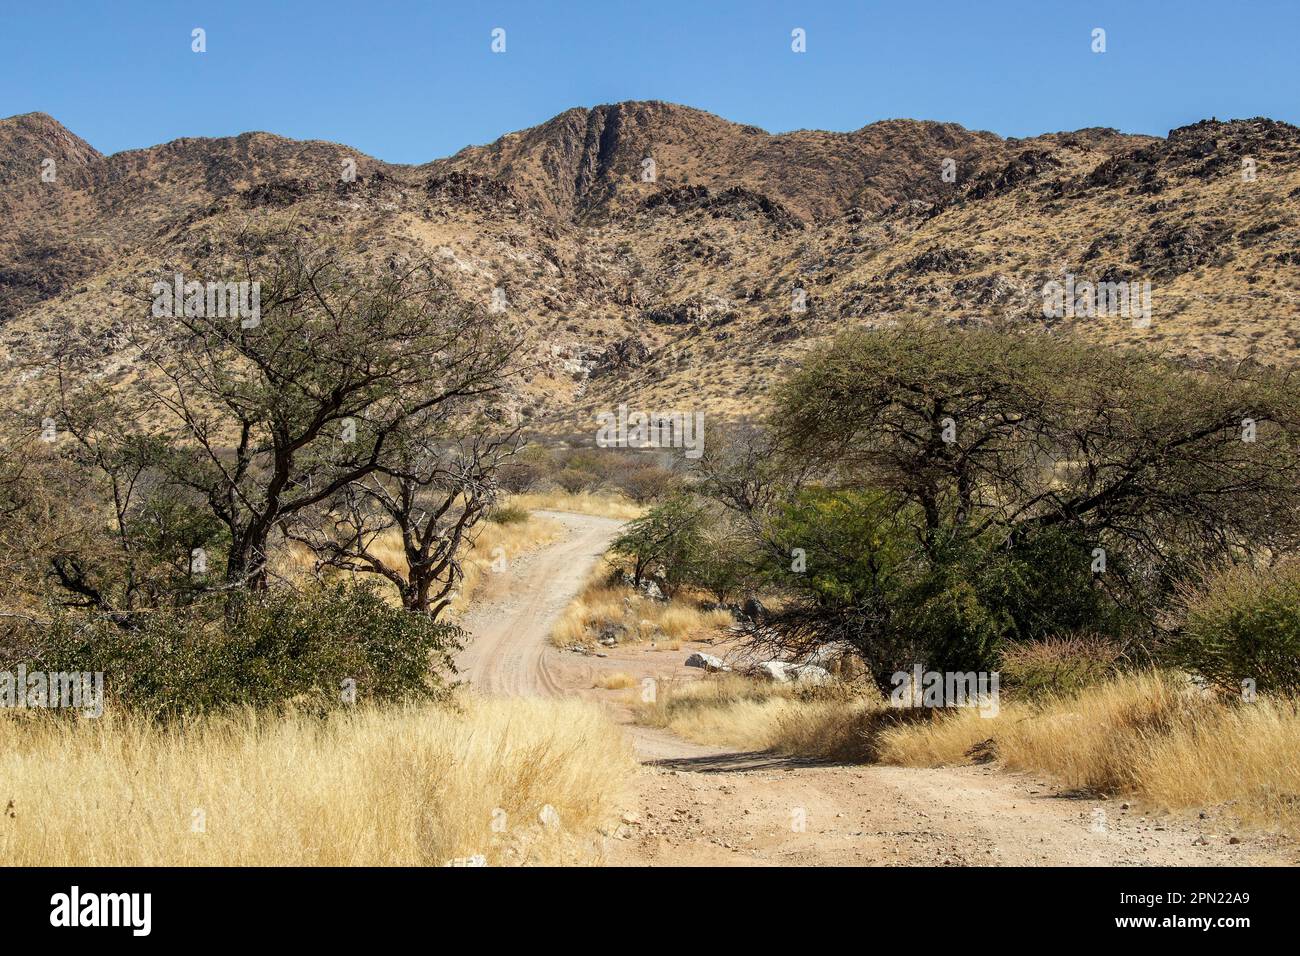 Une donga ou une vallée sèche, avec un lit de rivière sec au fond des montagnes en Namibie Banque D'Images